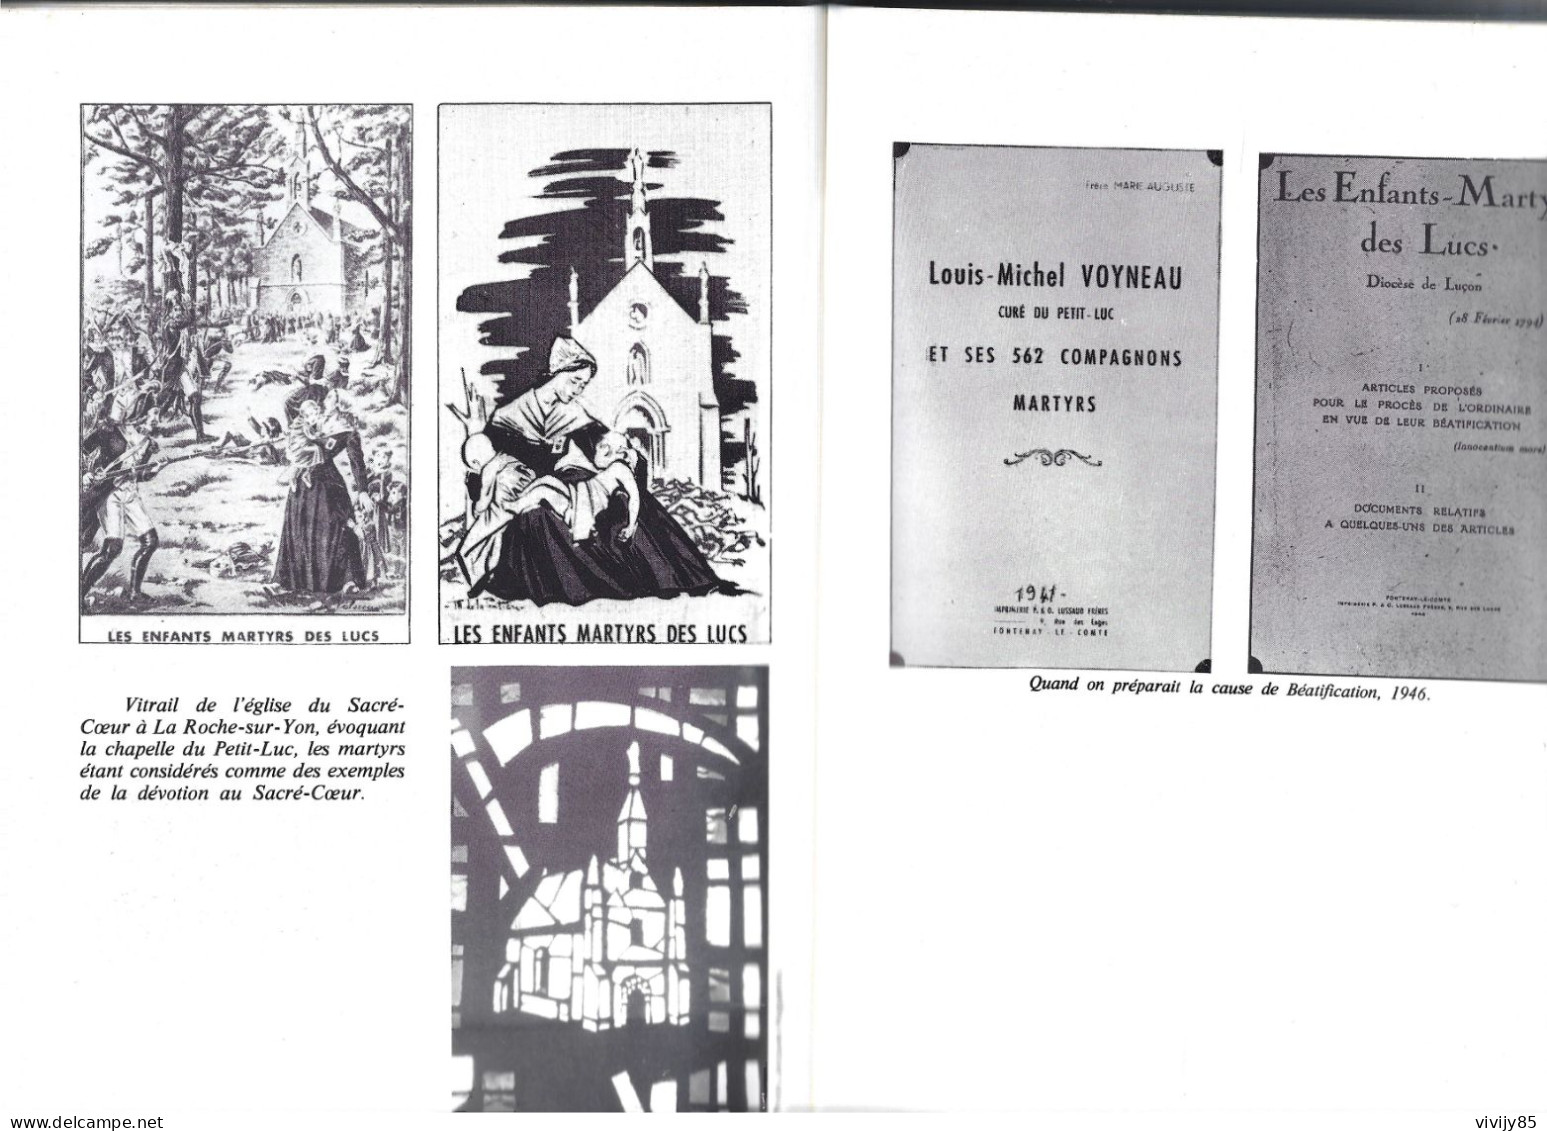 85 - Livre illustré de 167 pages " Le Massacre des LUCS SUR BOULOGNE " et le martyrologe du curé Barbedette